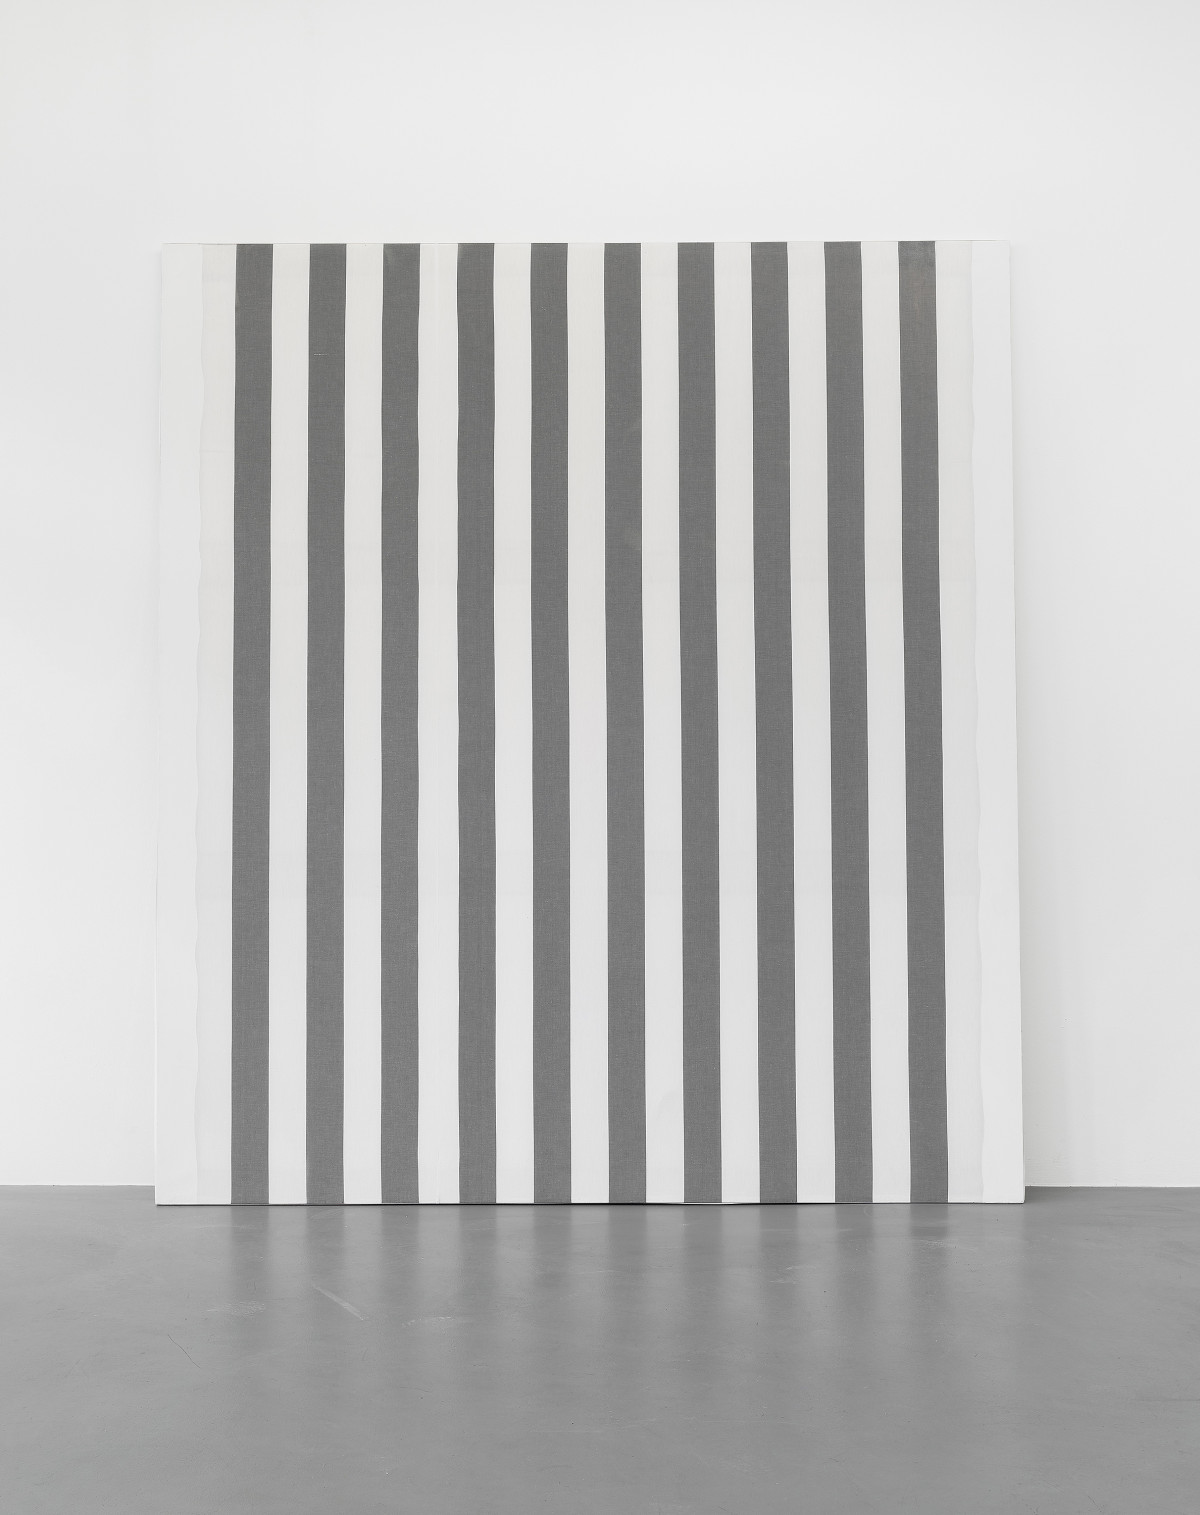 Daniel Buren, ‘Peinture acrylique blanche sur tissu rayé blanc et noir’, 1966